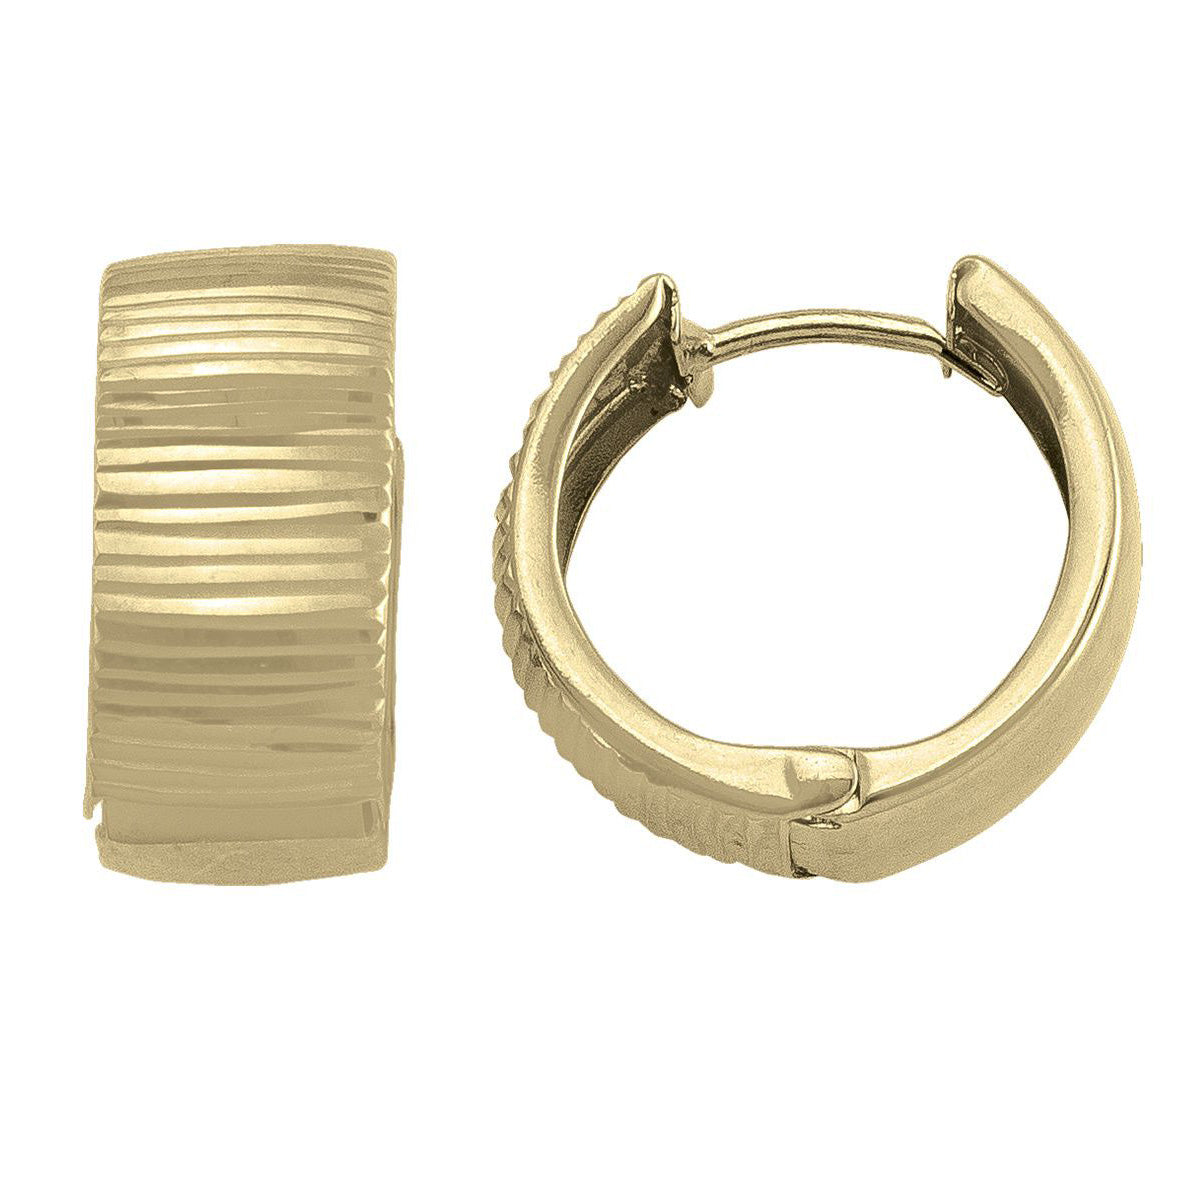 EHG0109, Gold Earrings, Huggies, 8.1 mm Tubing